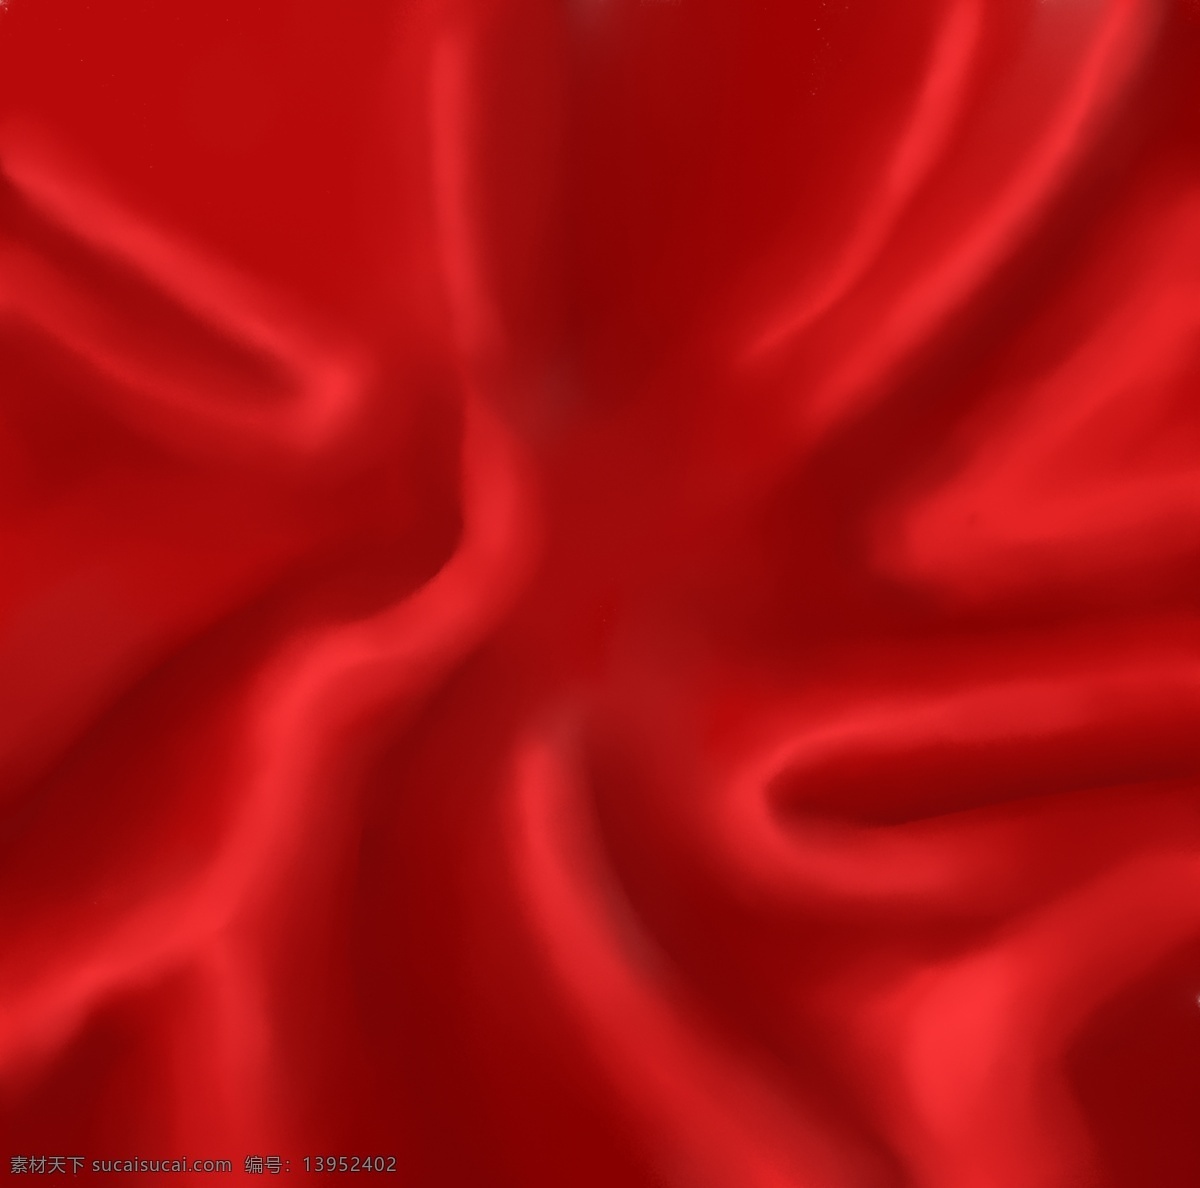 红色丝绸 布 红布 褶皱 红色褶皱 绸缎 海报素材 节日素材 情人节素材 促销素材 丝绸 庆典素材 周年庆素材 年会素材 过年素材 红色背景素材